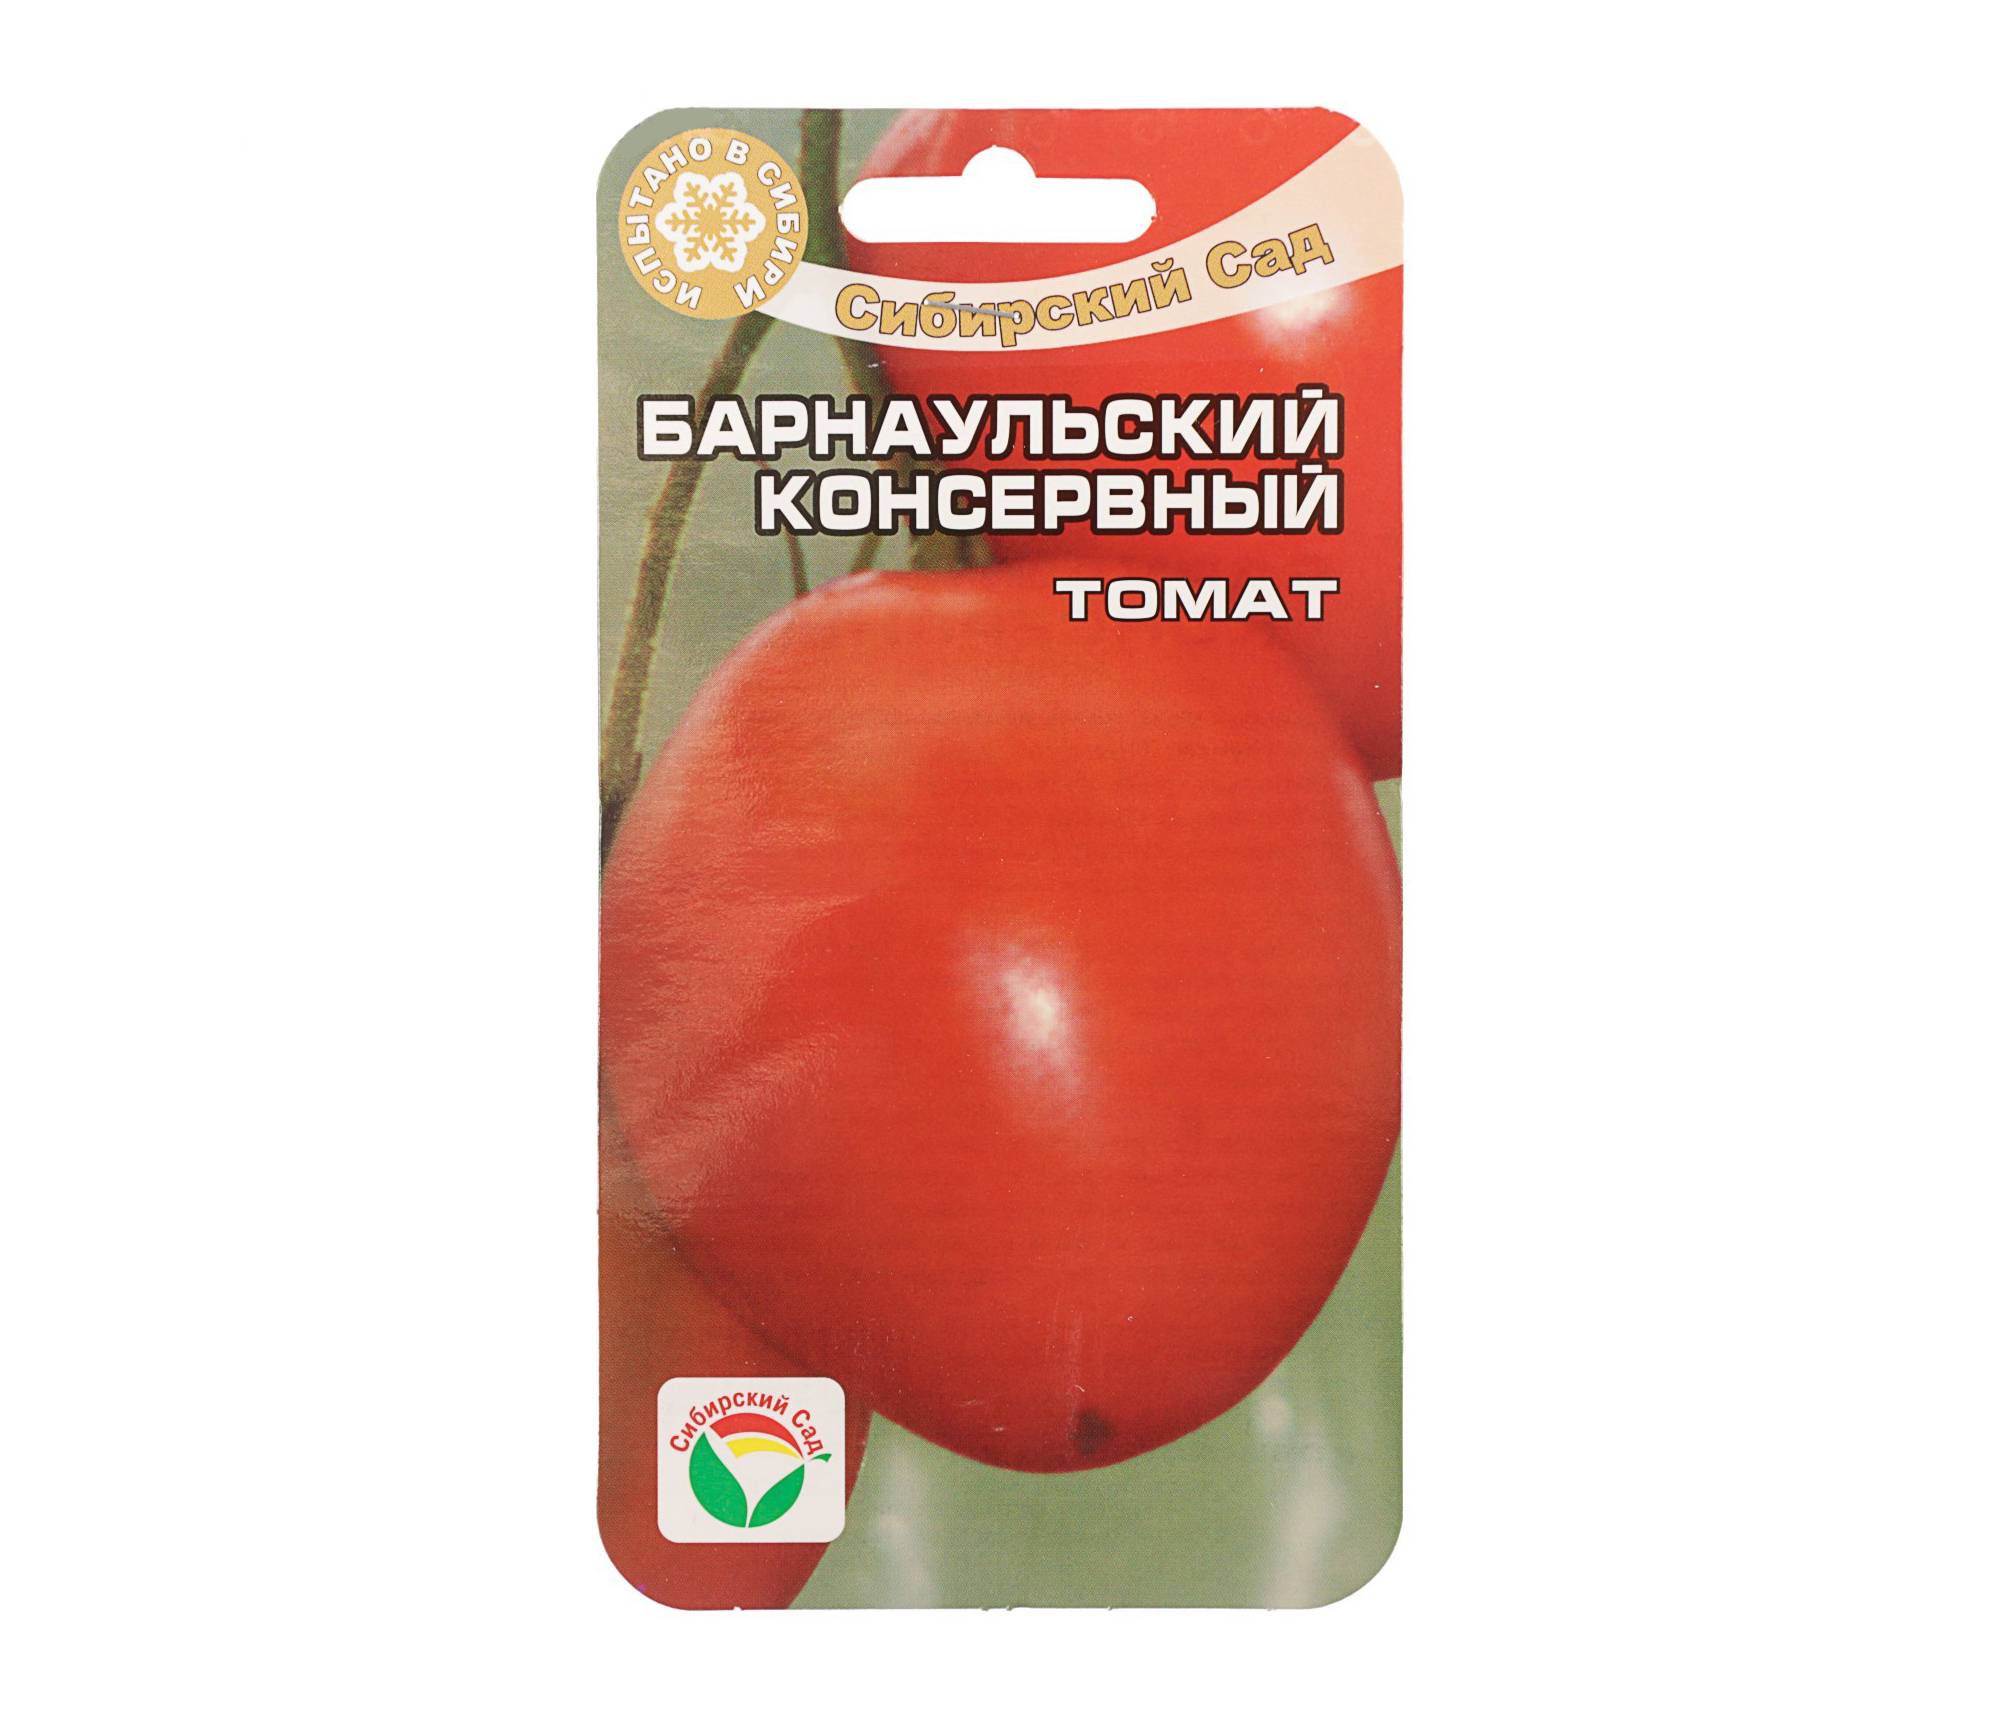 Томат барнаульский консервный: характеристика и описание сорта, отзывы об урожайности помидоров и фото растения